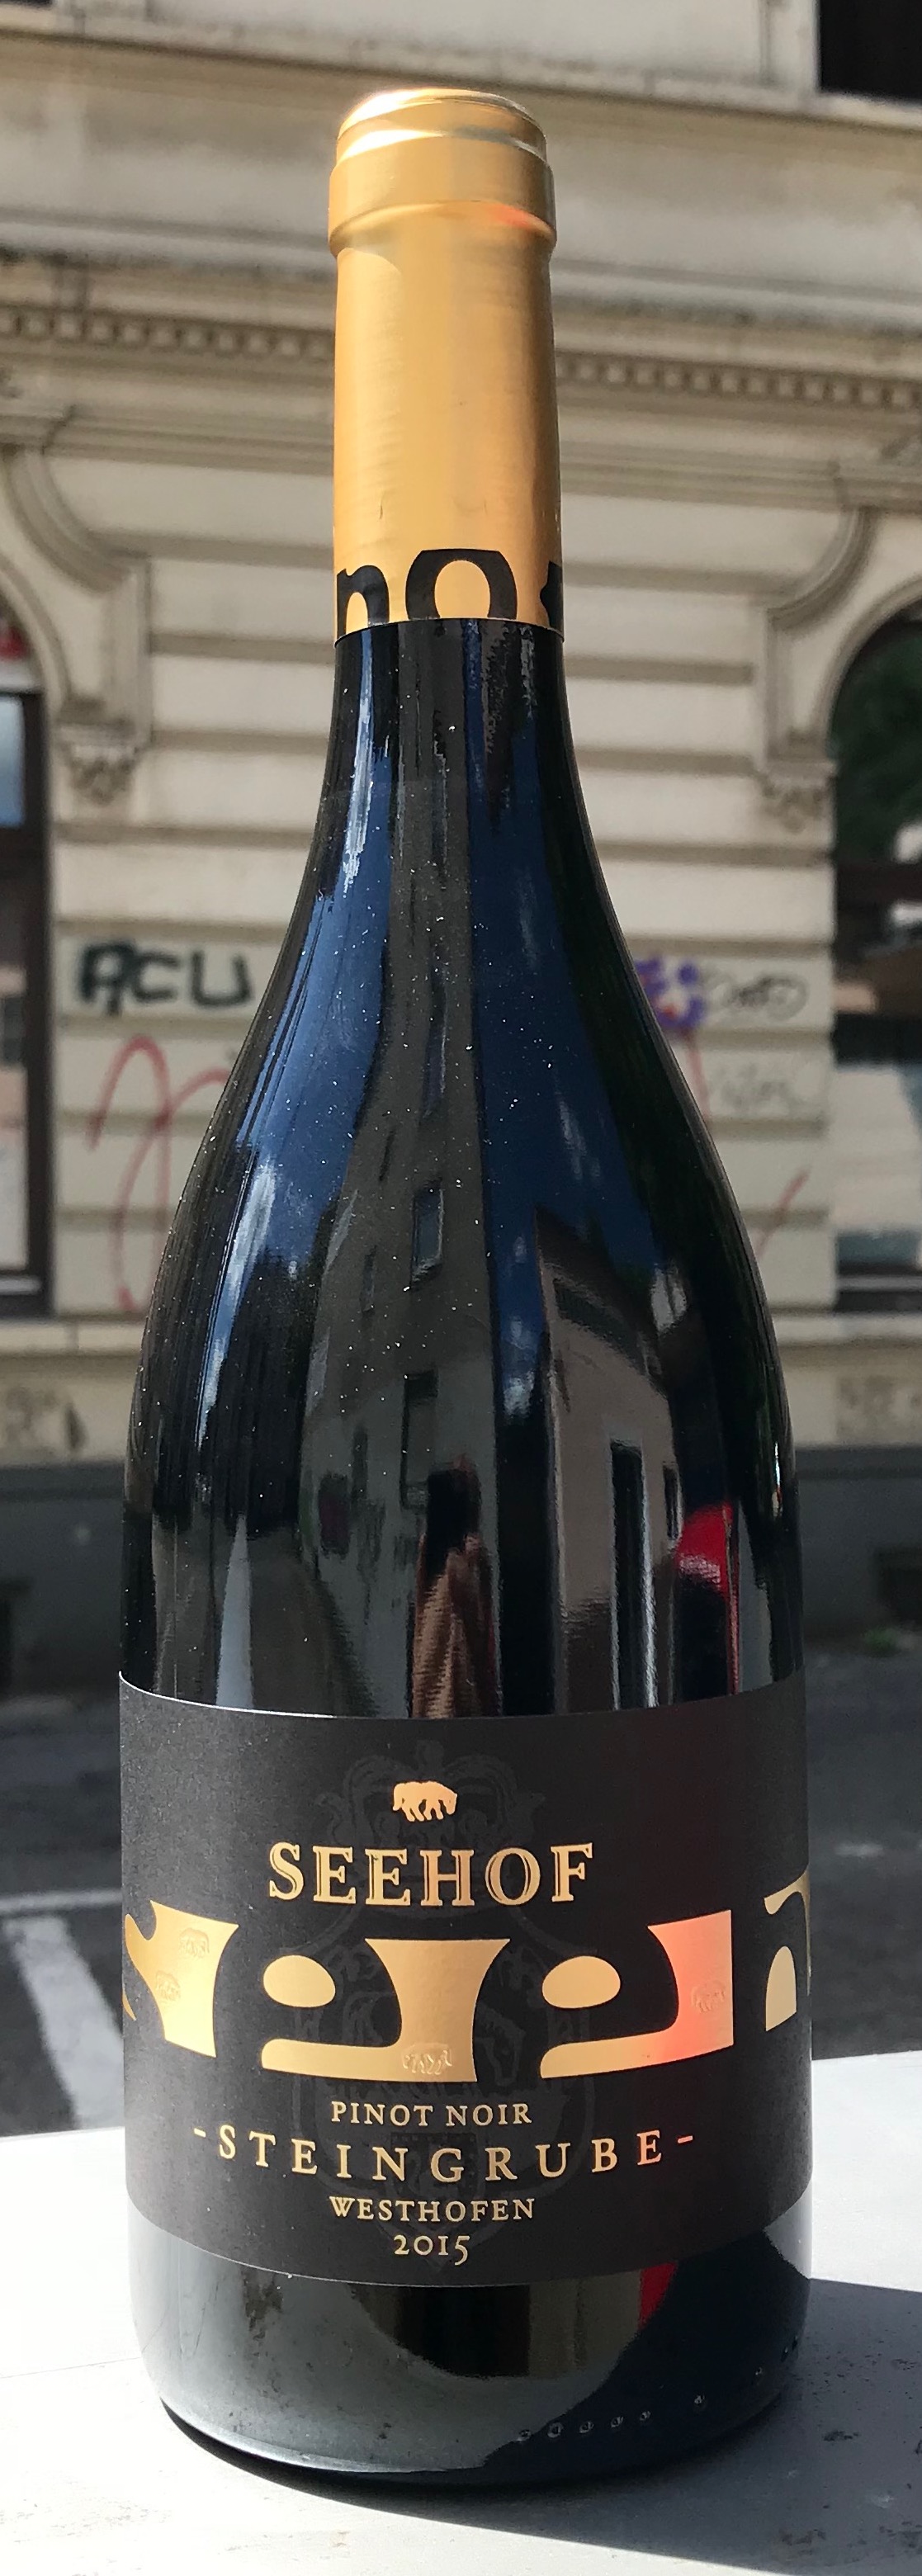 Seehof Pinot Noir Steingrube 2015 Deutschland Rheinhessen Rotwein | AixVinum